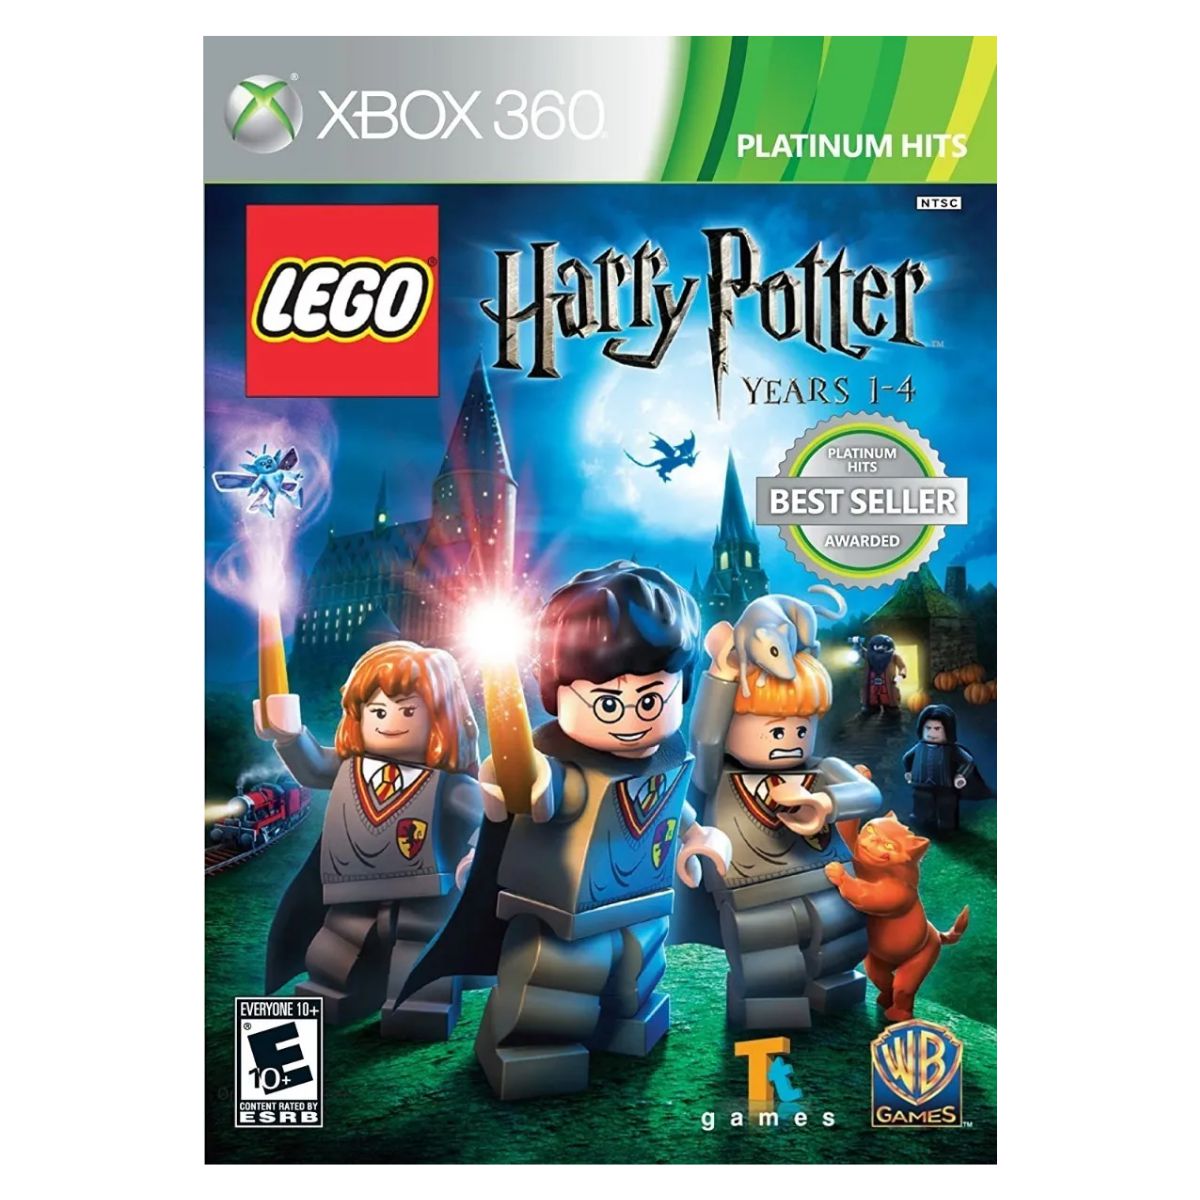 Lego Harry Potter 2 também pode ser comprado mais barato na Xbox